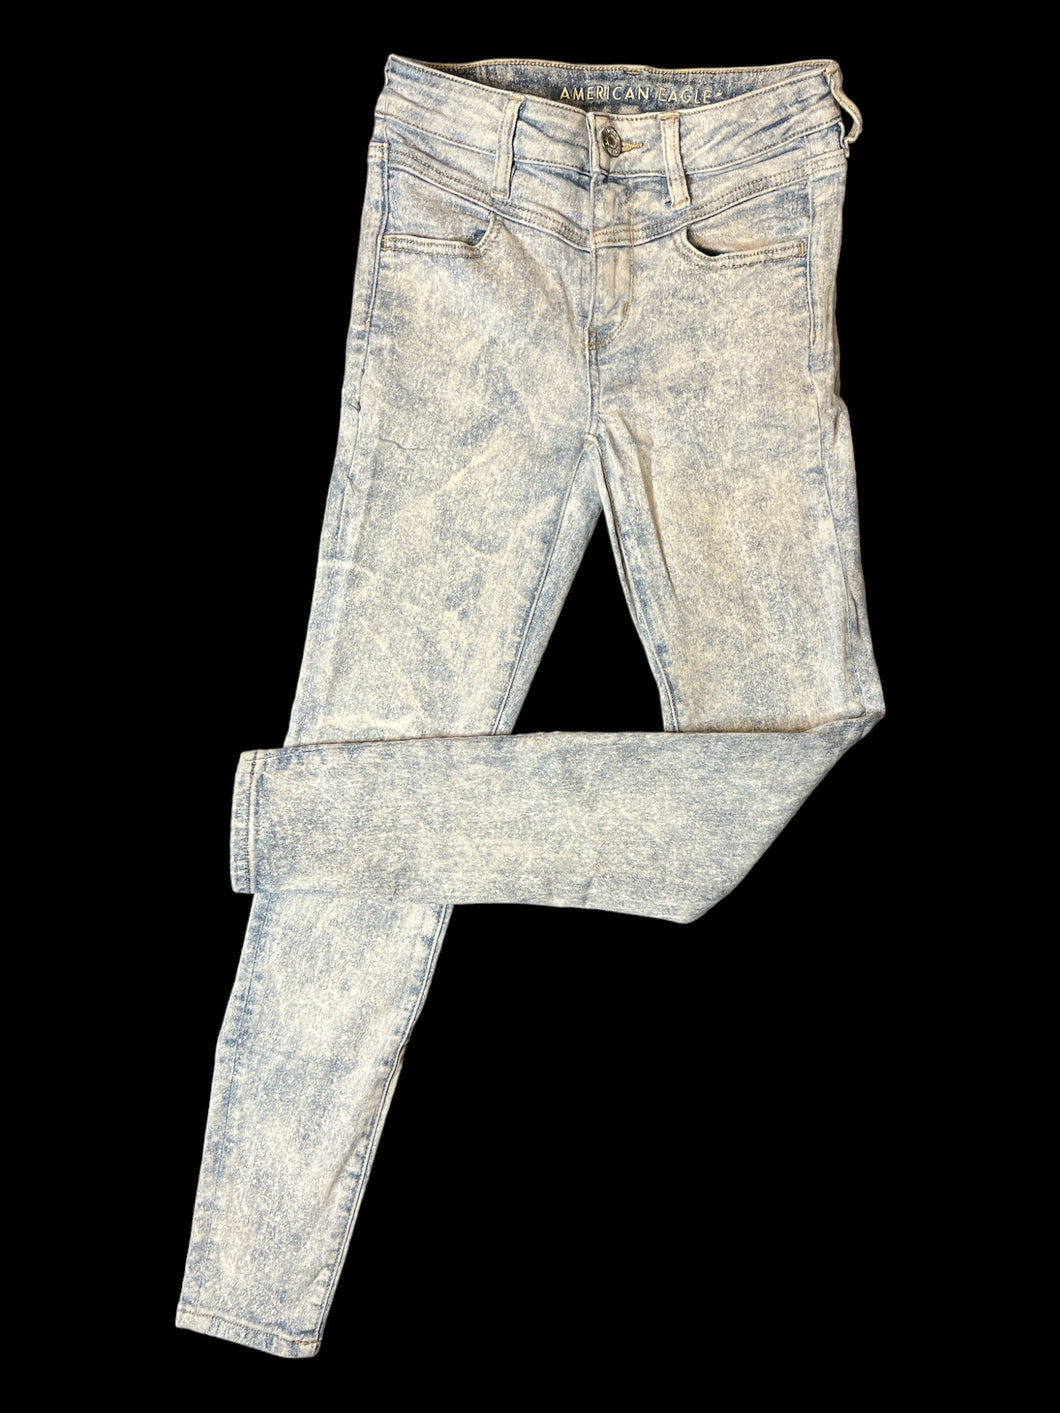 XS Light blue distressed denim pants w/ skinny legs, pockets, & button/zipper closure